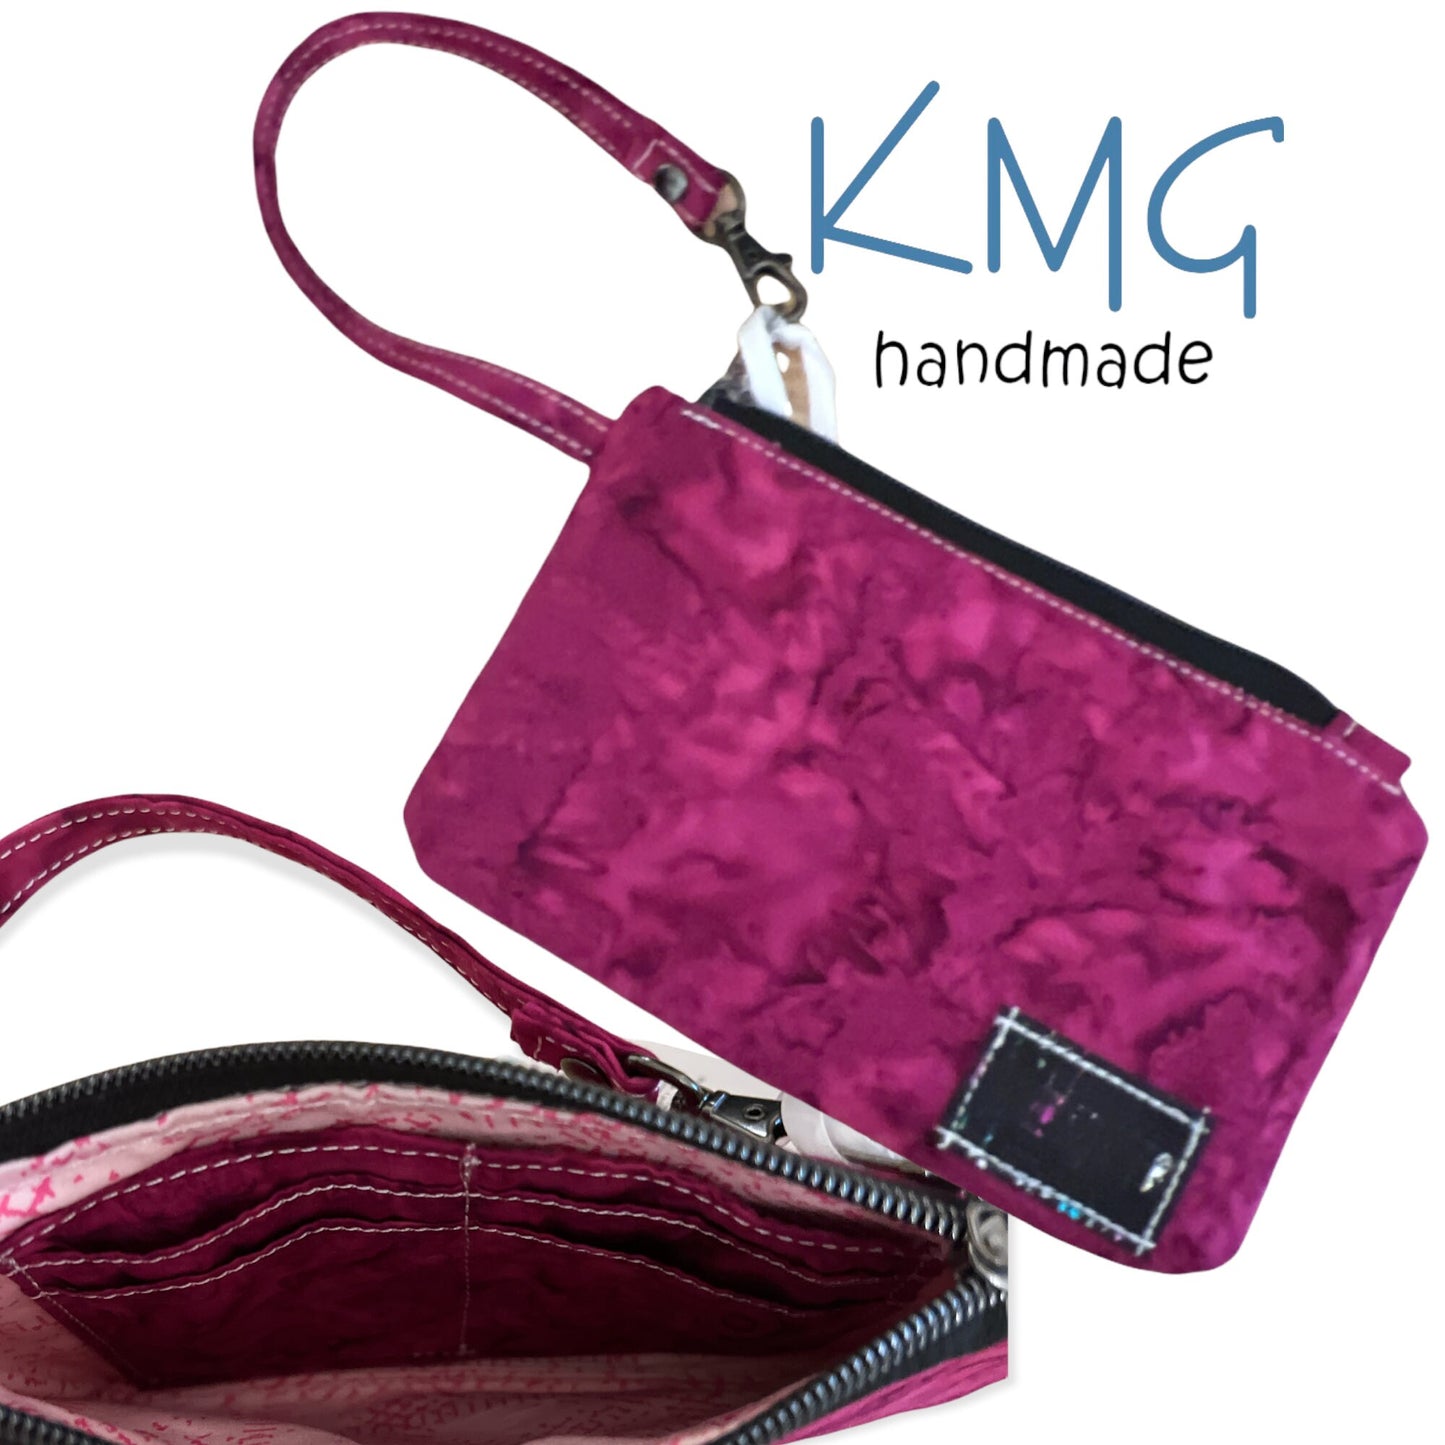 KMGhandmade Original Clip & Zip Wristlets - Group A